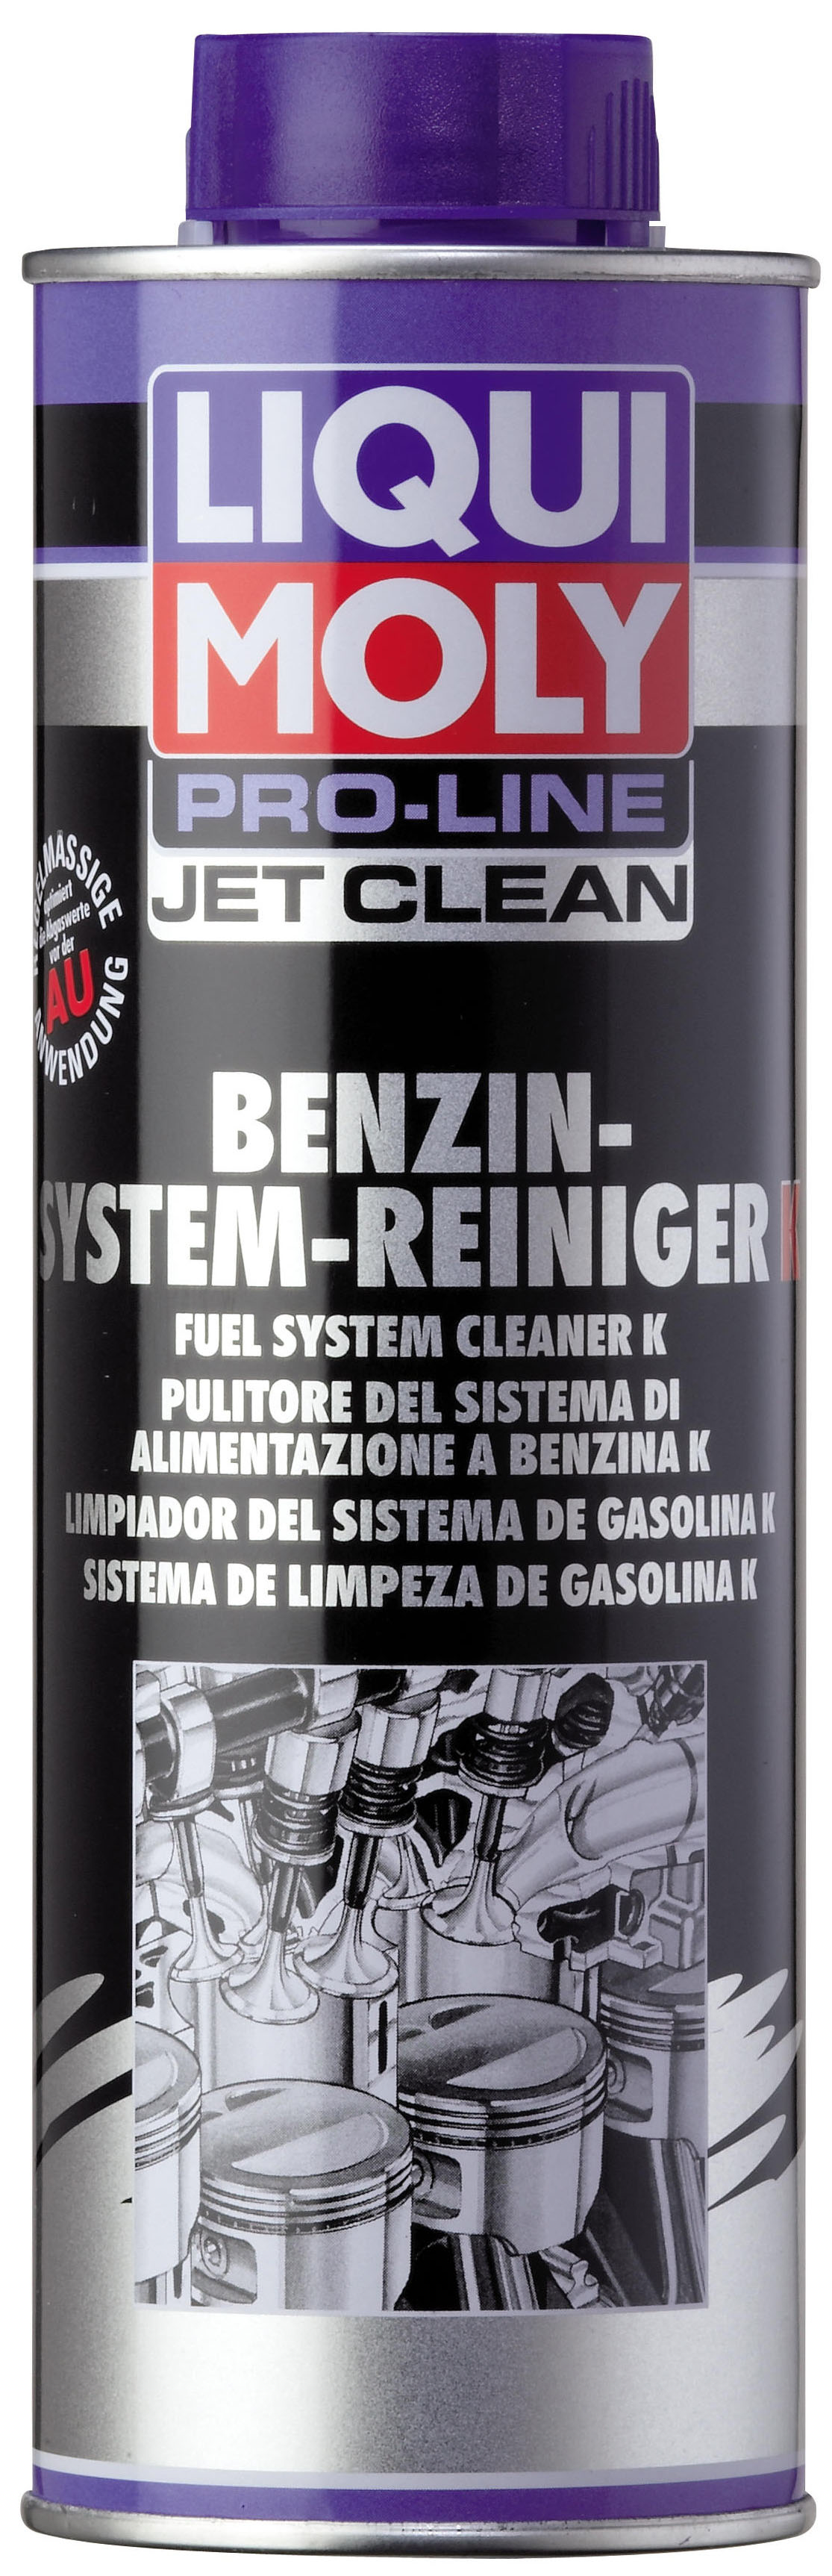 Жидкость д/очистки бенз.систем впрыска Pro-Line JetClean Benzin-System-Reiniger Konzentrat, 500мл - Liqui Moly 5152